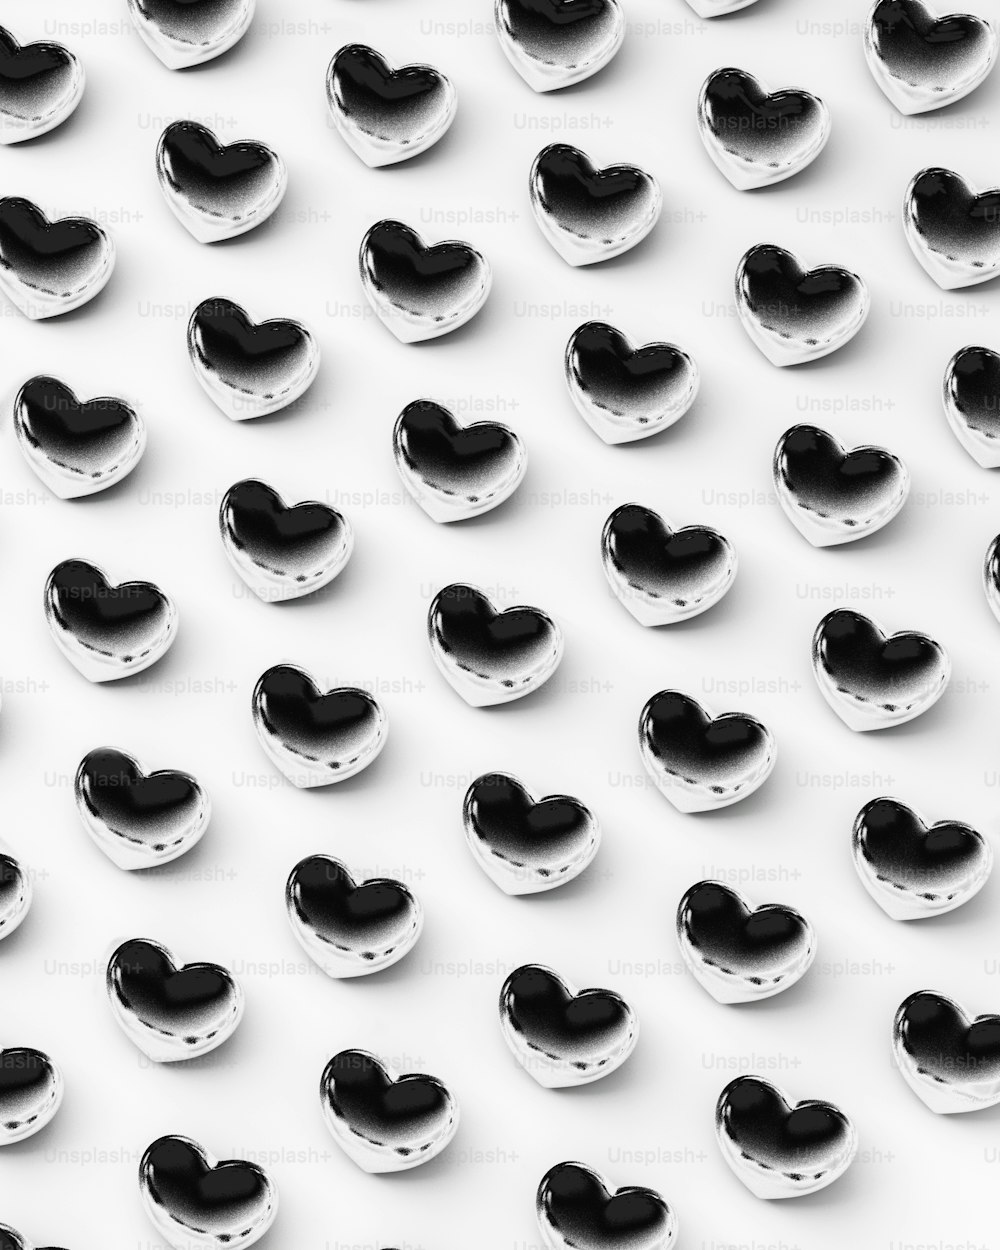 Un grupo de corazones blancos y negros sobre una superficie blanca